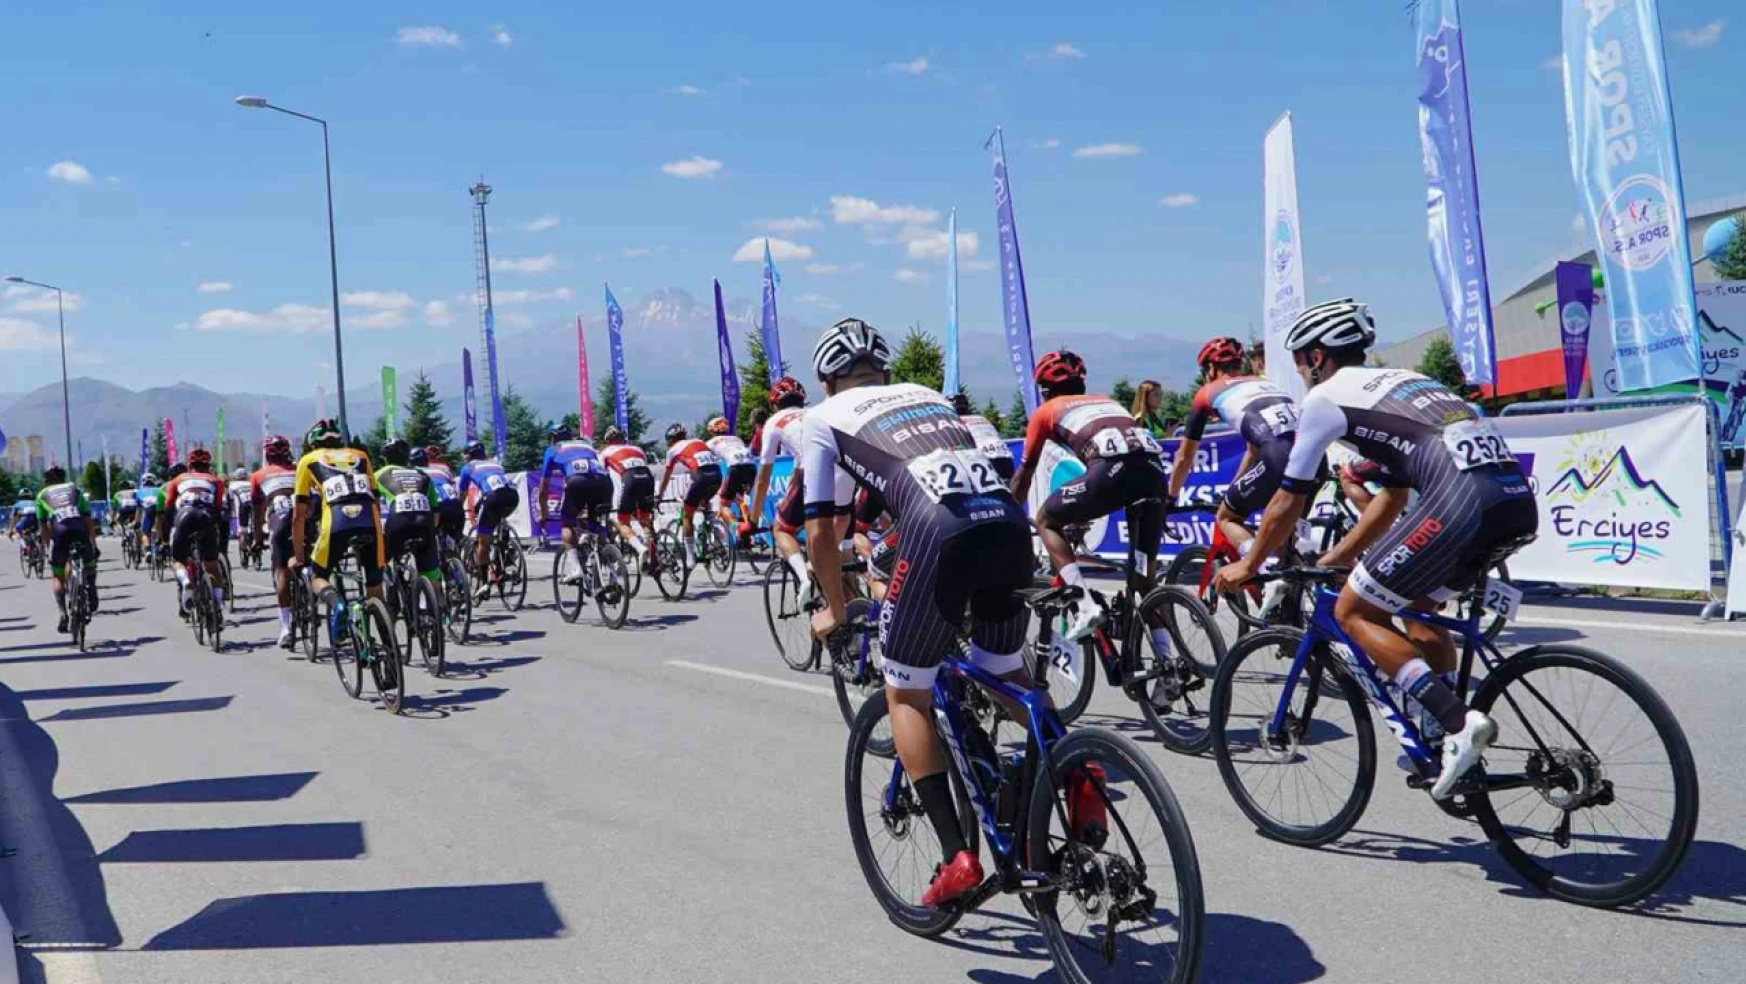 Erciyes Uluslararası Yol Bisiklet Yarışları Grand Prix Kültepe Etabı ile devam ediyor